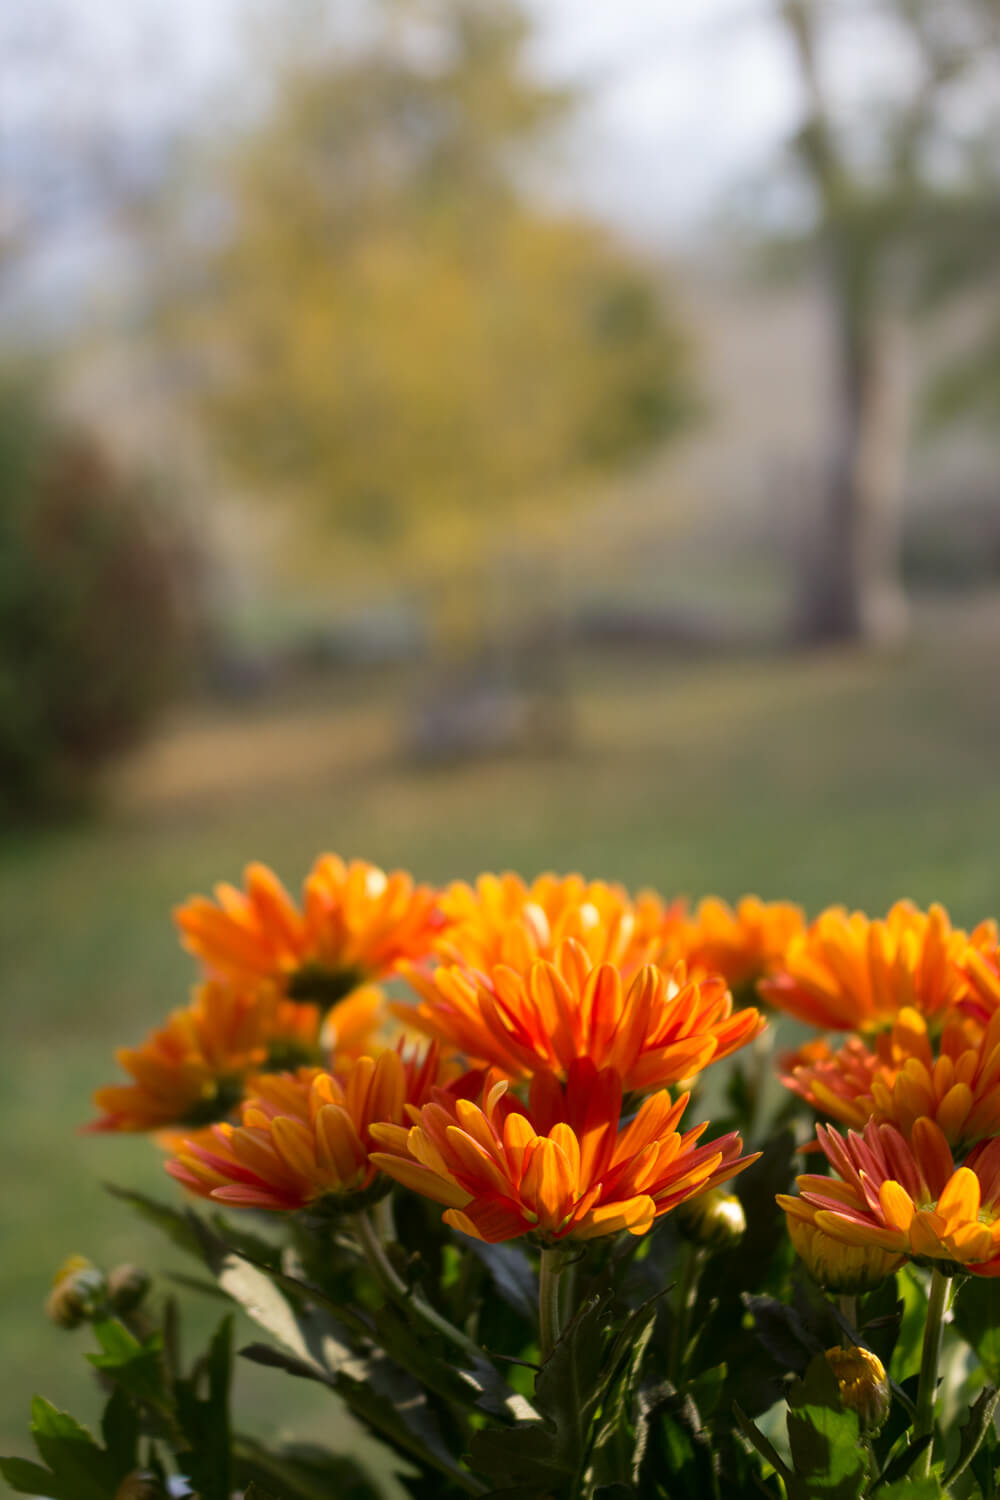 La bellezza dell'autunno - Crisantemi alla finestra - Lily&Sage Design